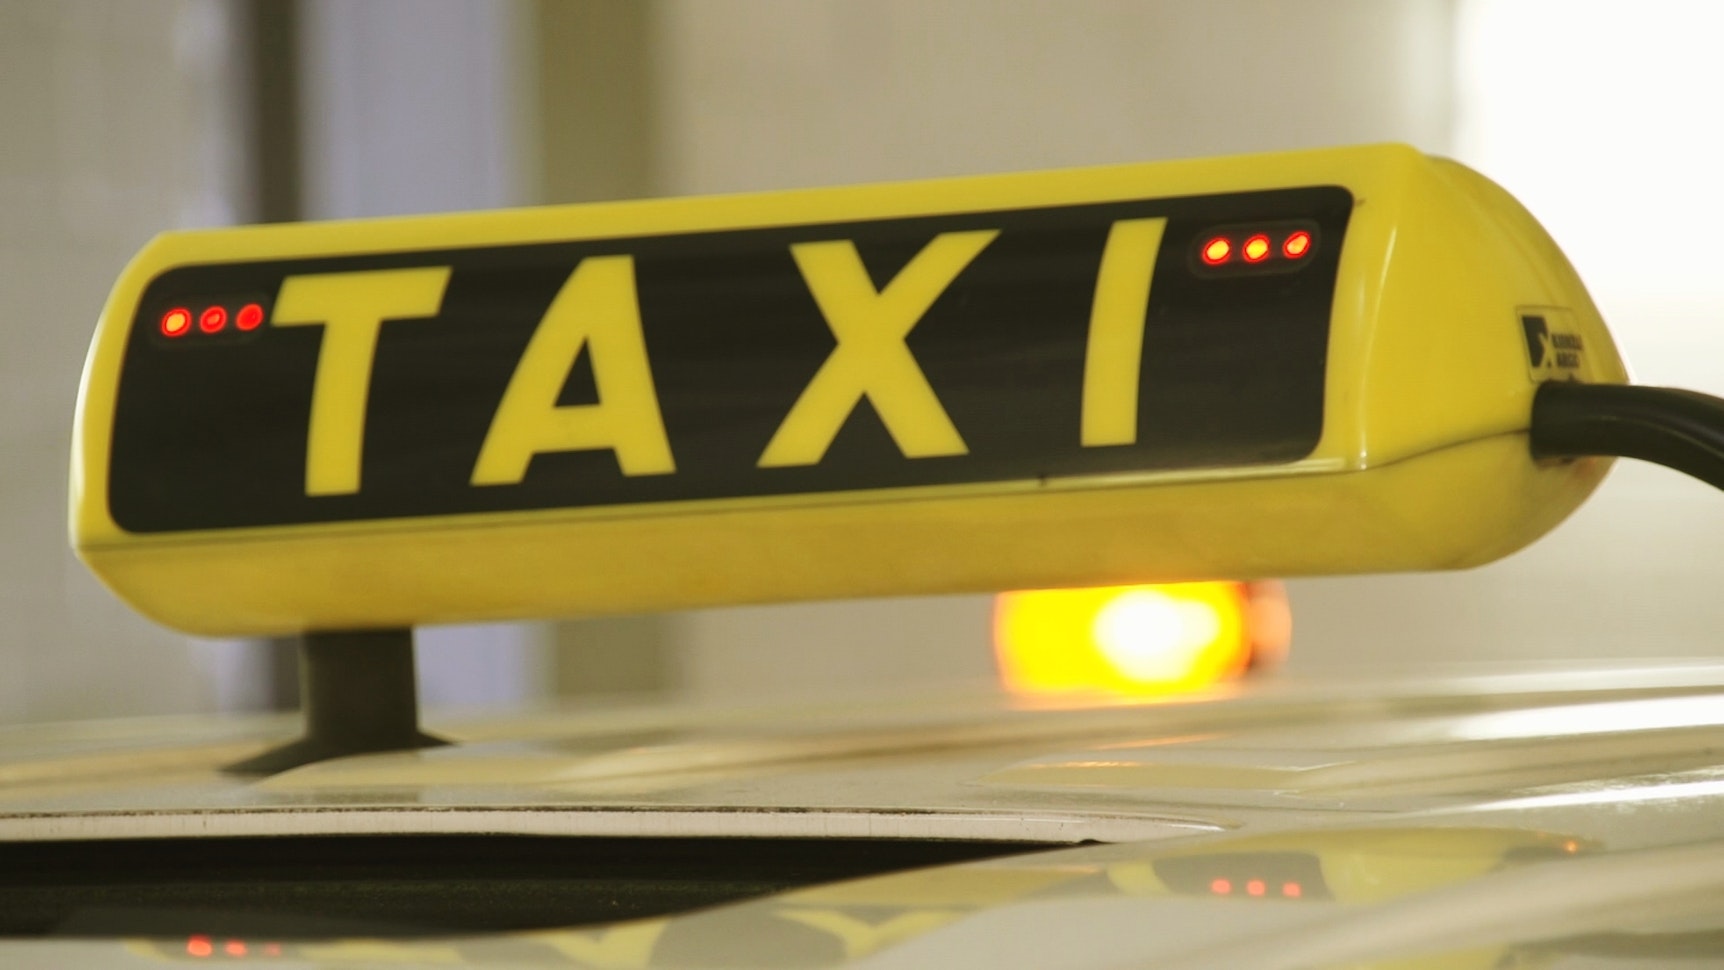 Taxi: Wenn diese Lichter am Taxischild blinken, sollten Sie sofort